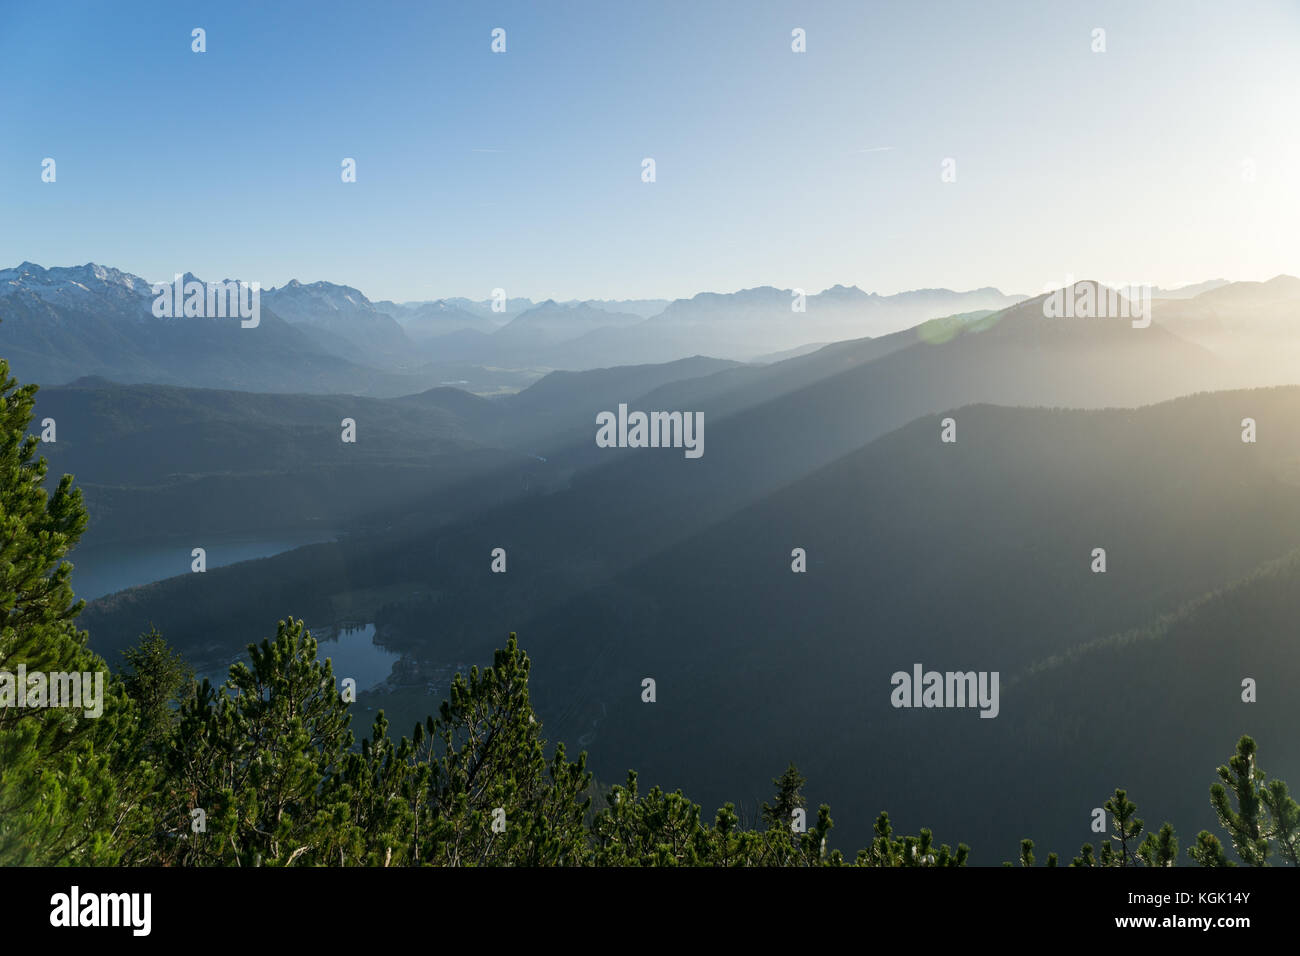 Vista panoramica dal herzogstand con il mountainscape con la nebbia del tramonto. Foto Stock